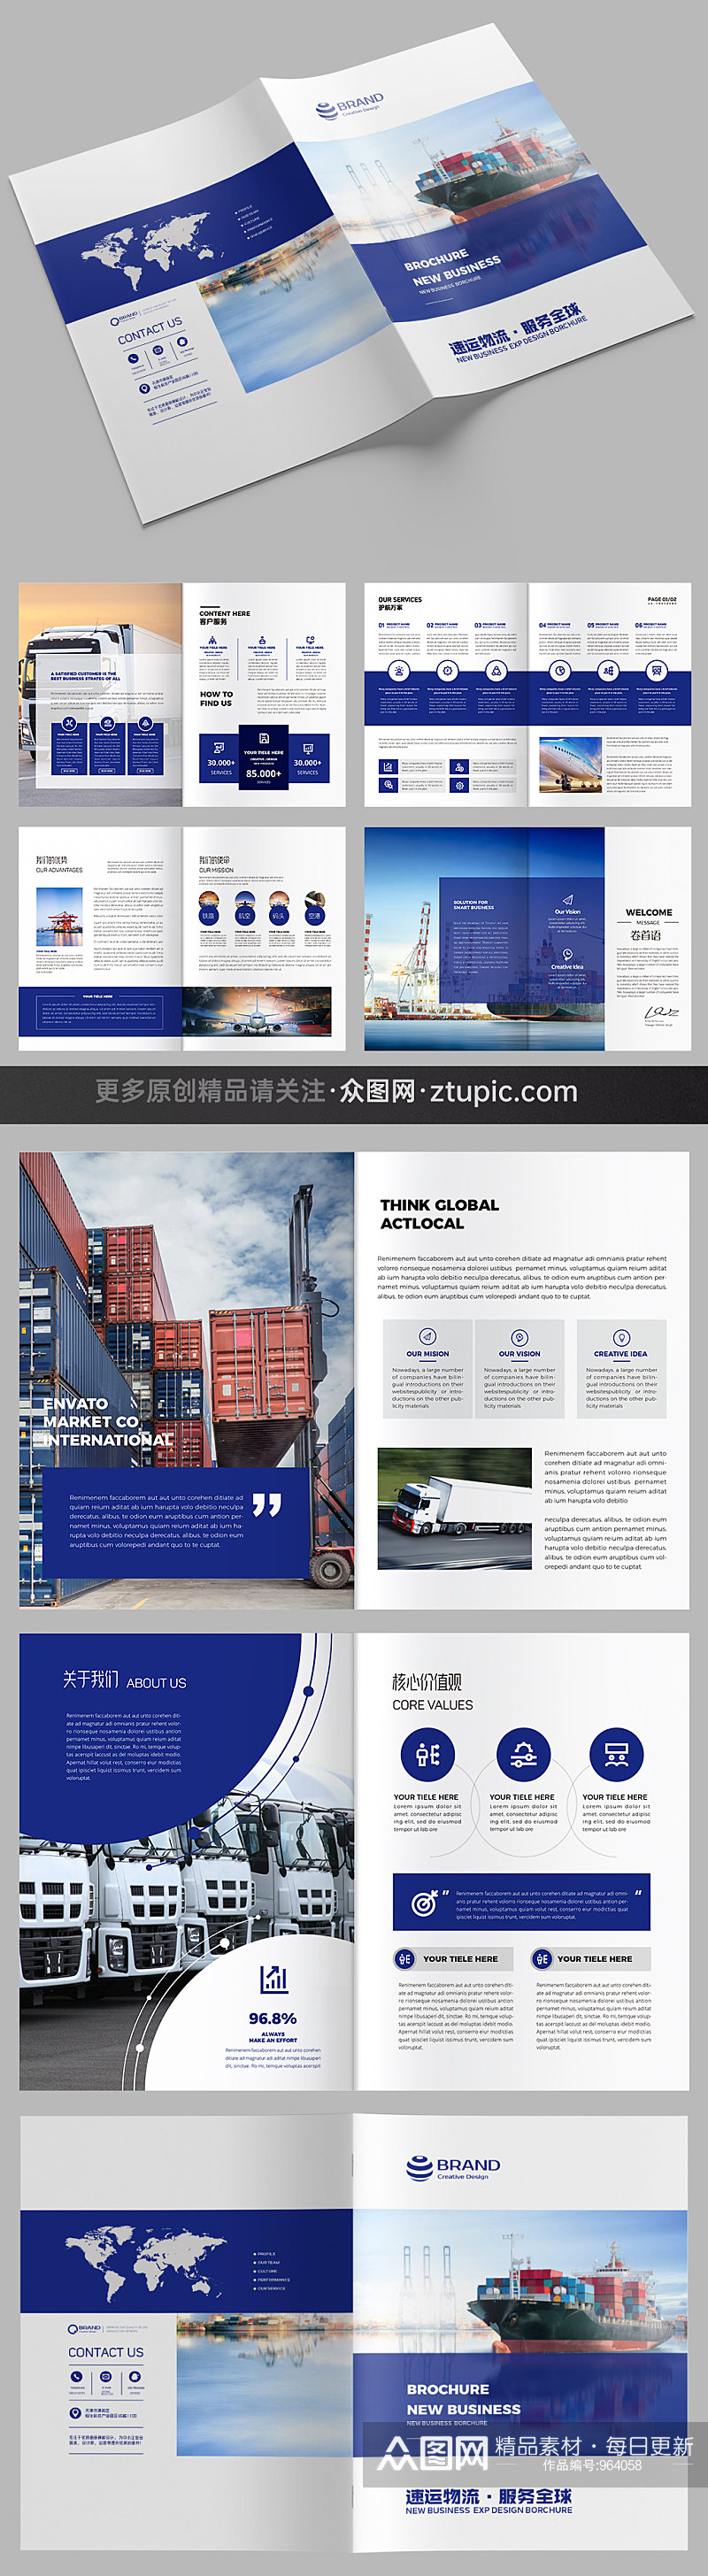 大气运输画册外贸物流宣传册设计模板素材